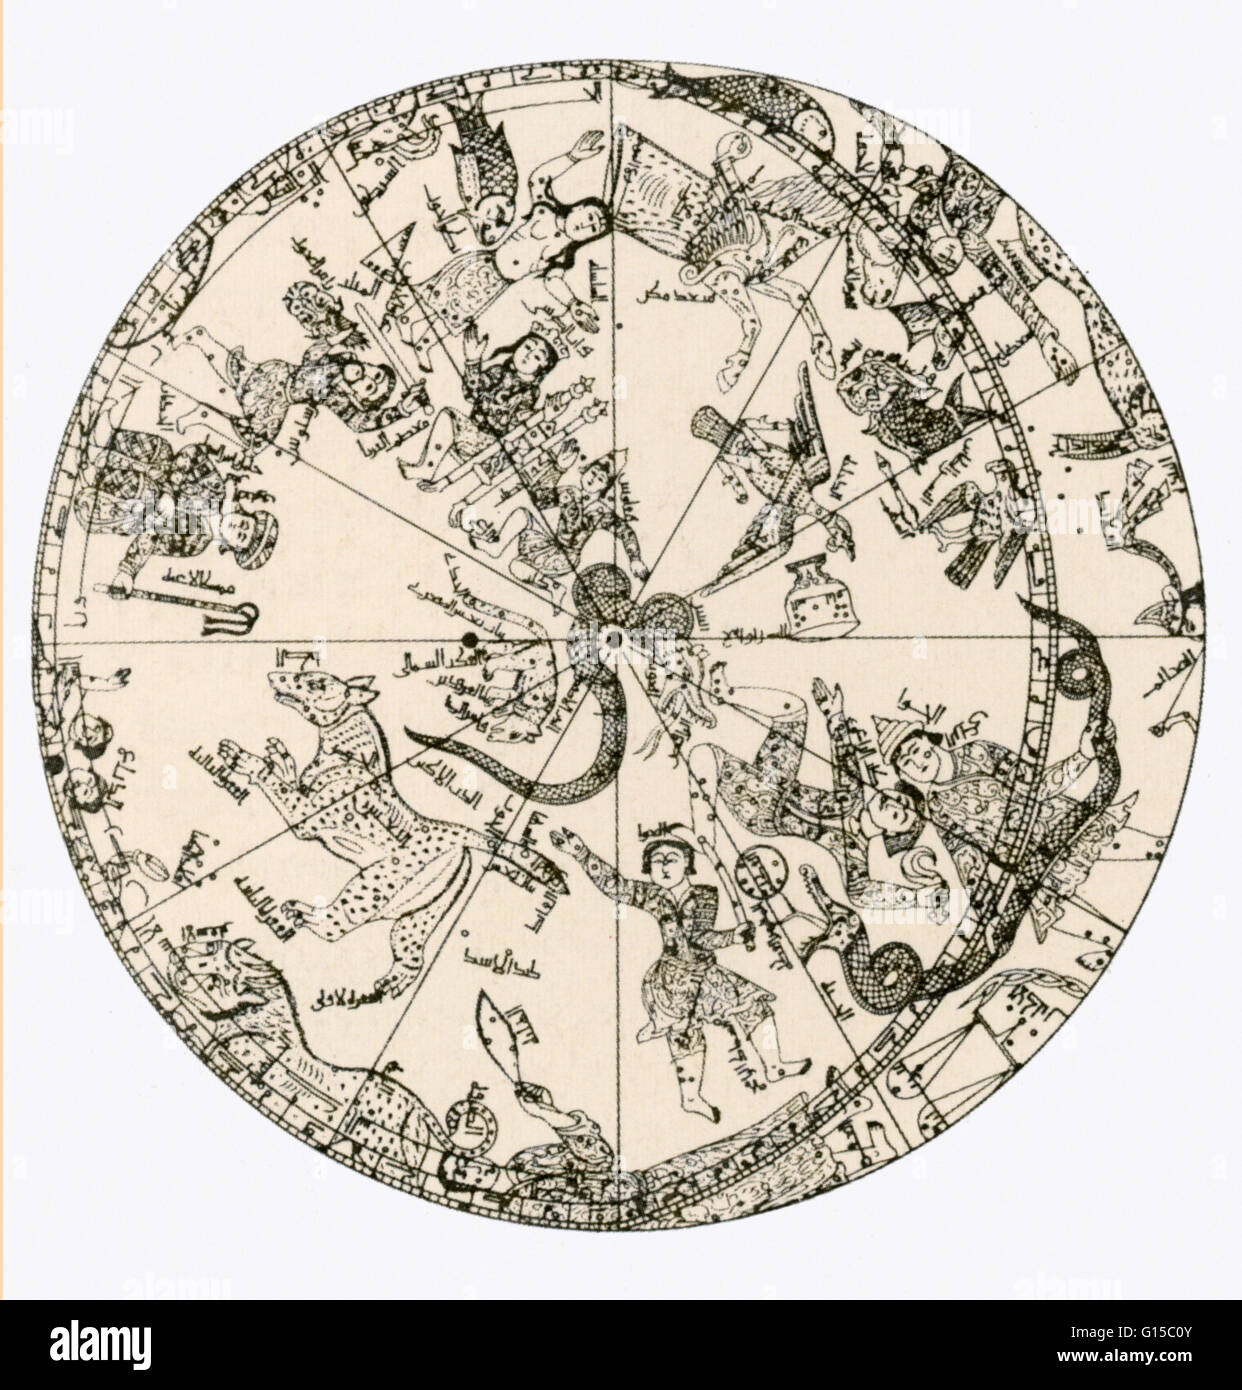 Veranschaulichung der Nordhalbkugel ein Messing Himmelsglobus, Major-General Sir John Malcolm angehören. Die Messing-Globus wurde von Muhammad ibn Hilal, möglicherweise von Maragha, Nord-West-Iran, AD 1275 / 76 gemacht. Stockfoto